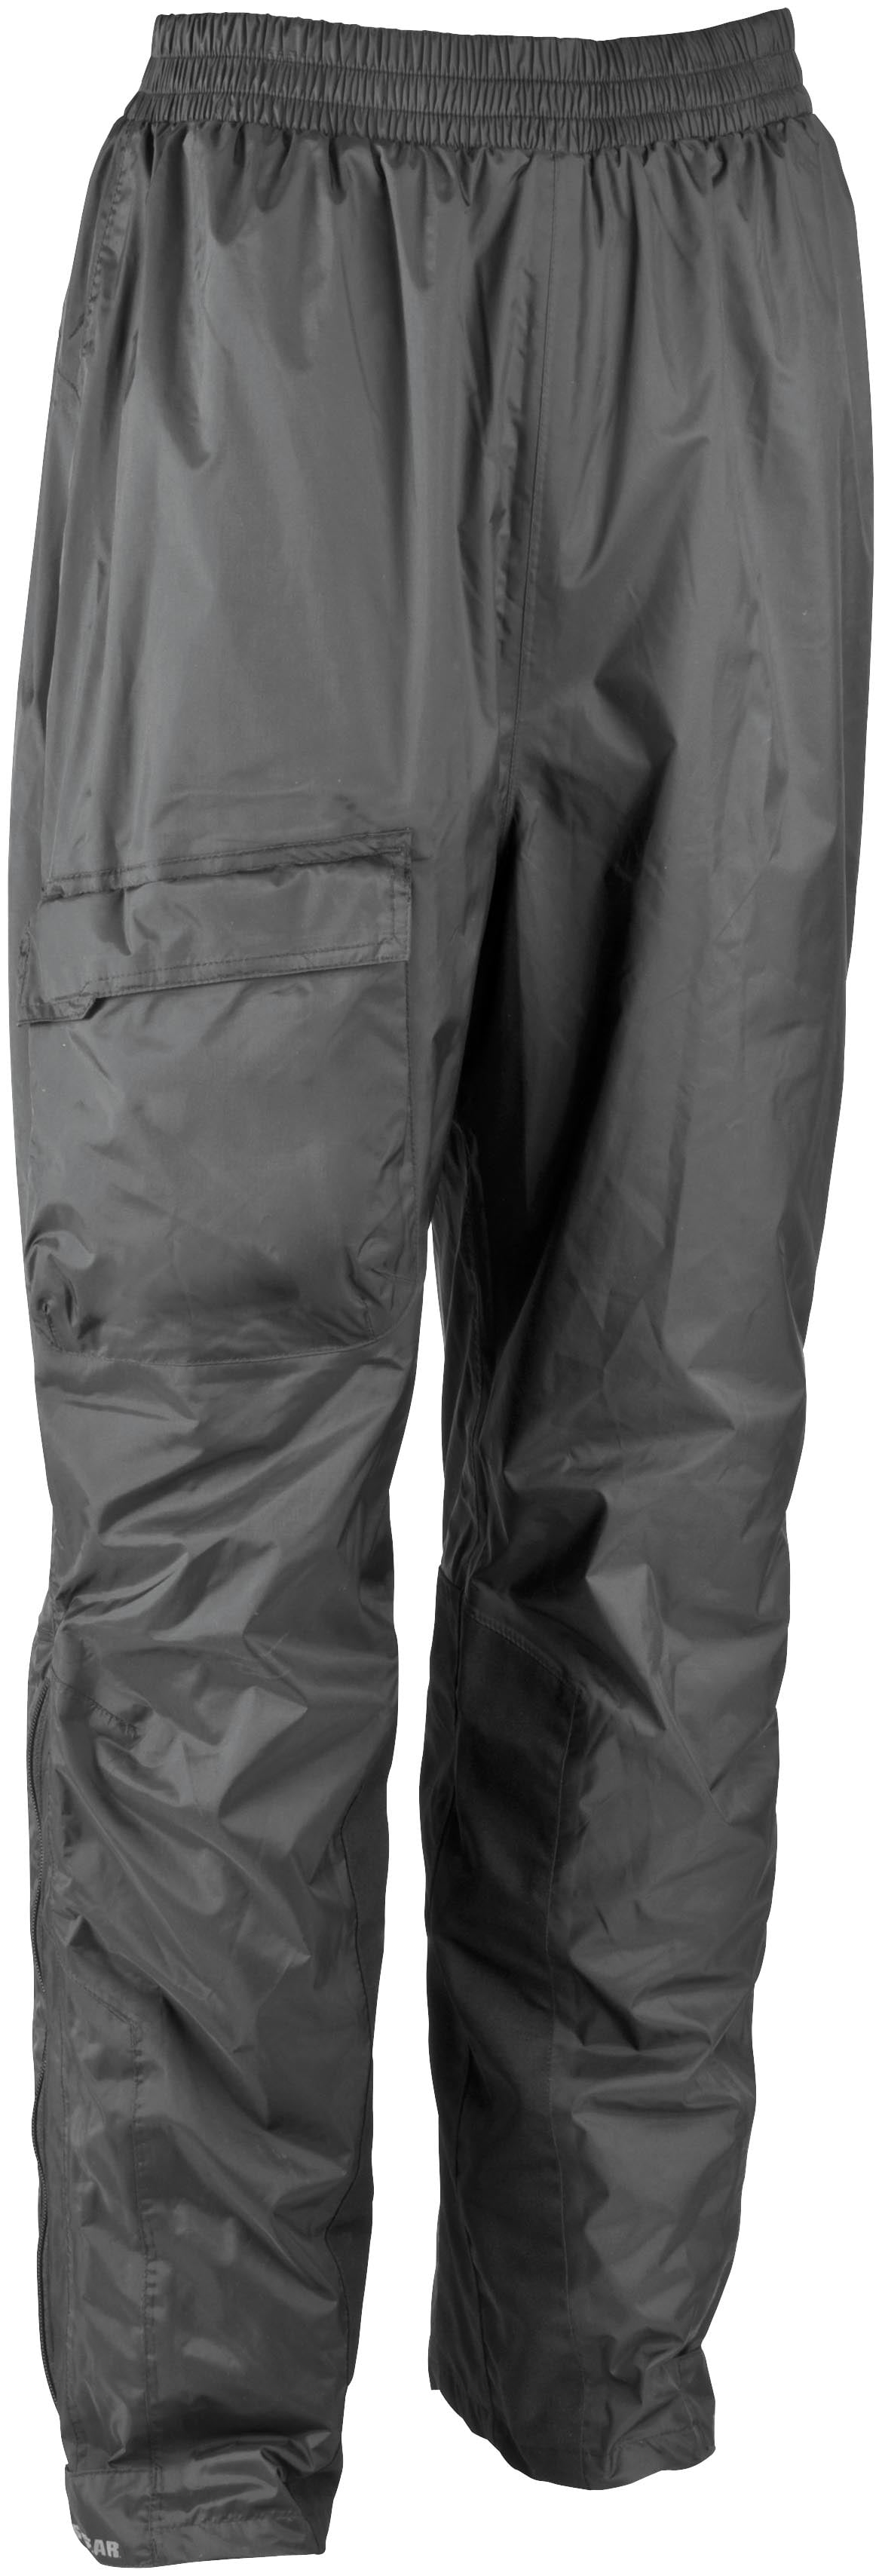 Firstgear Splash Pants (XXX-Large, Black) - Walmart.com - Walmart.com